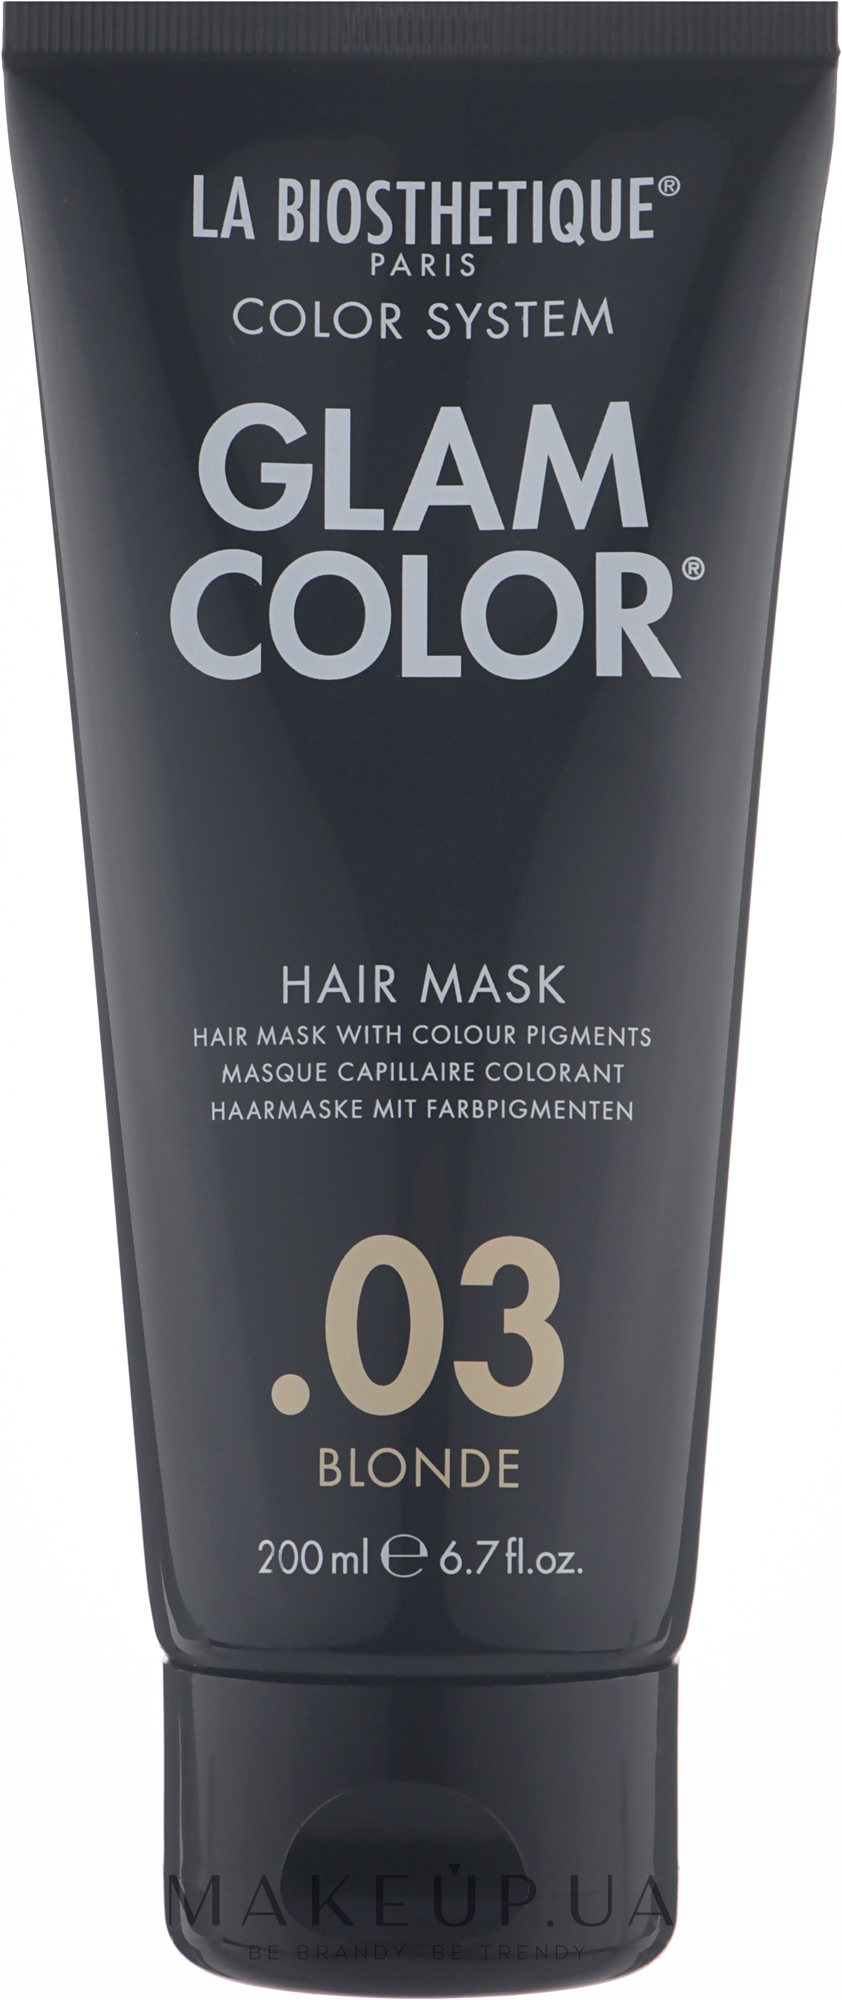 Тонирующая маска для волос - La Biosthetique Glam Color Hair Mask — фото 03 - Blonde